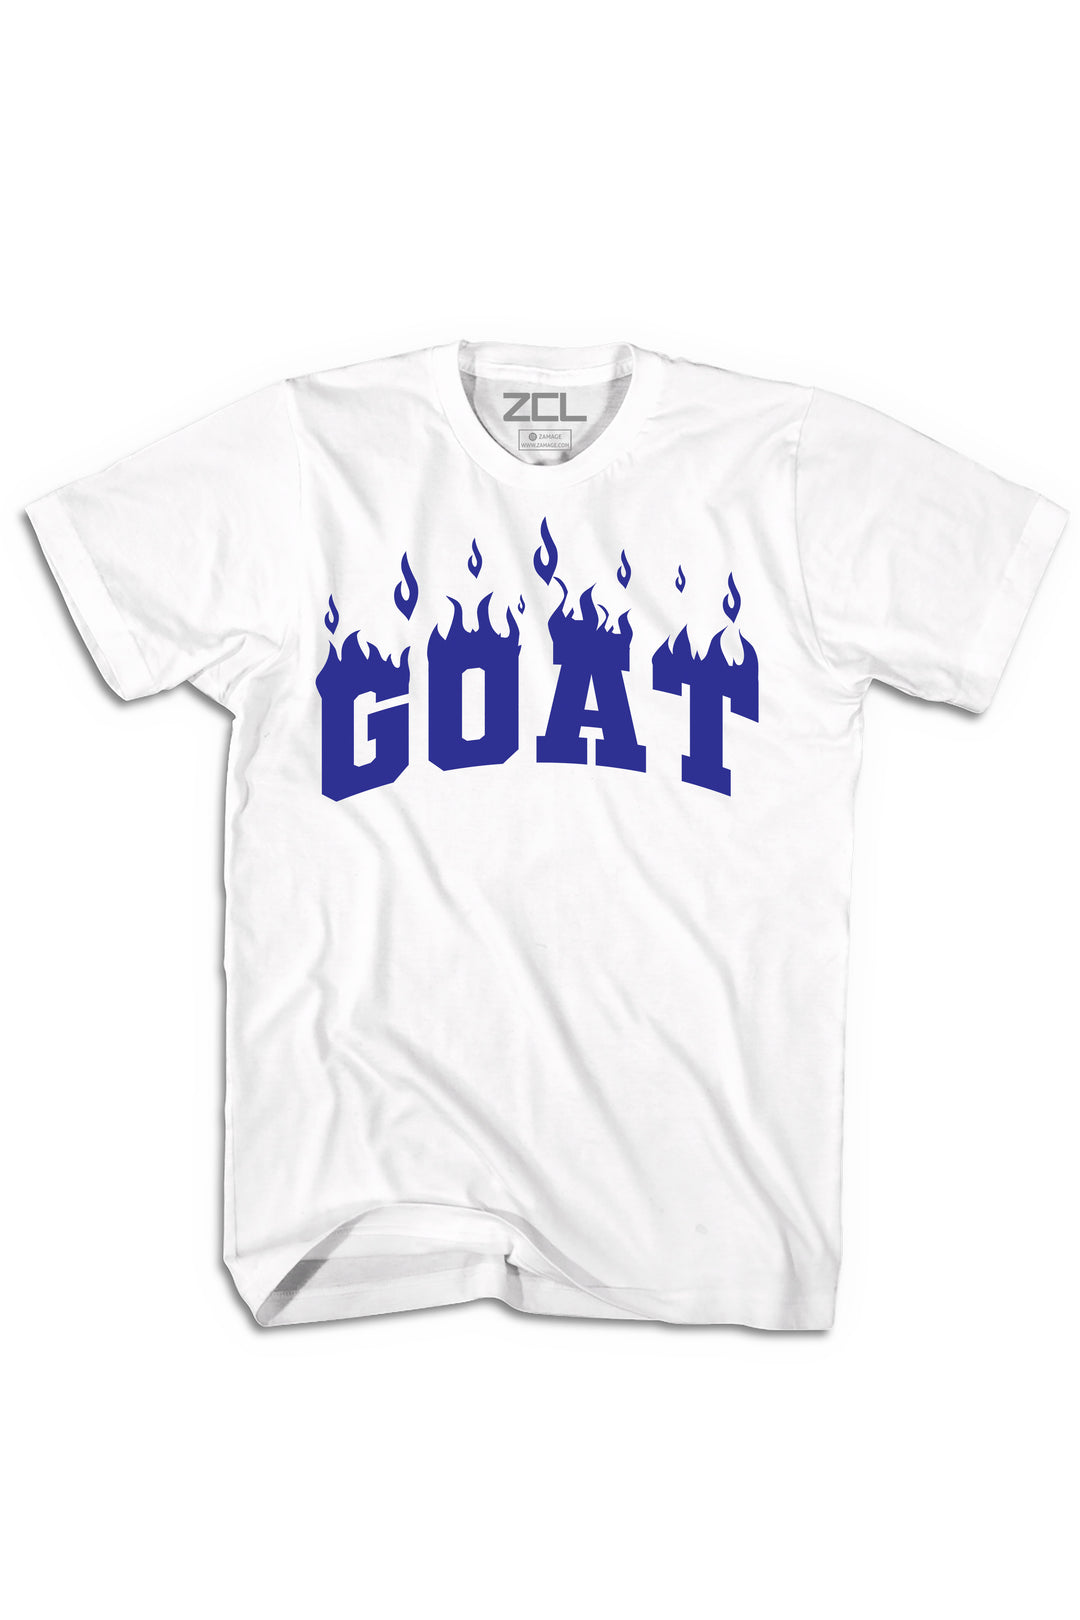 Goat Flame Tee (Navy Logo) - Zamage